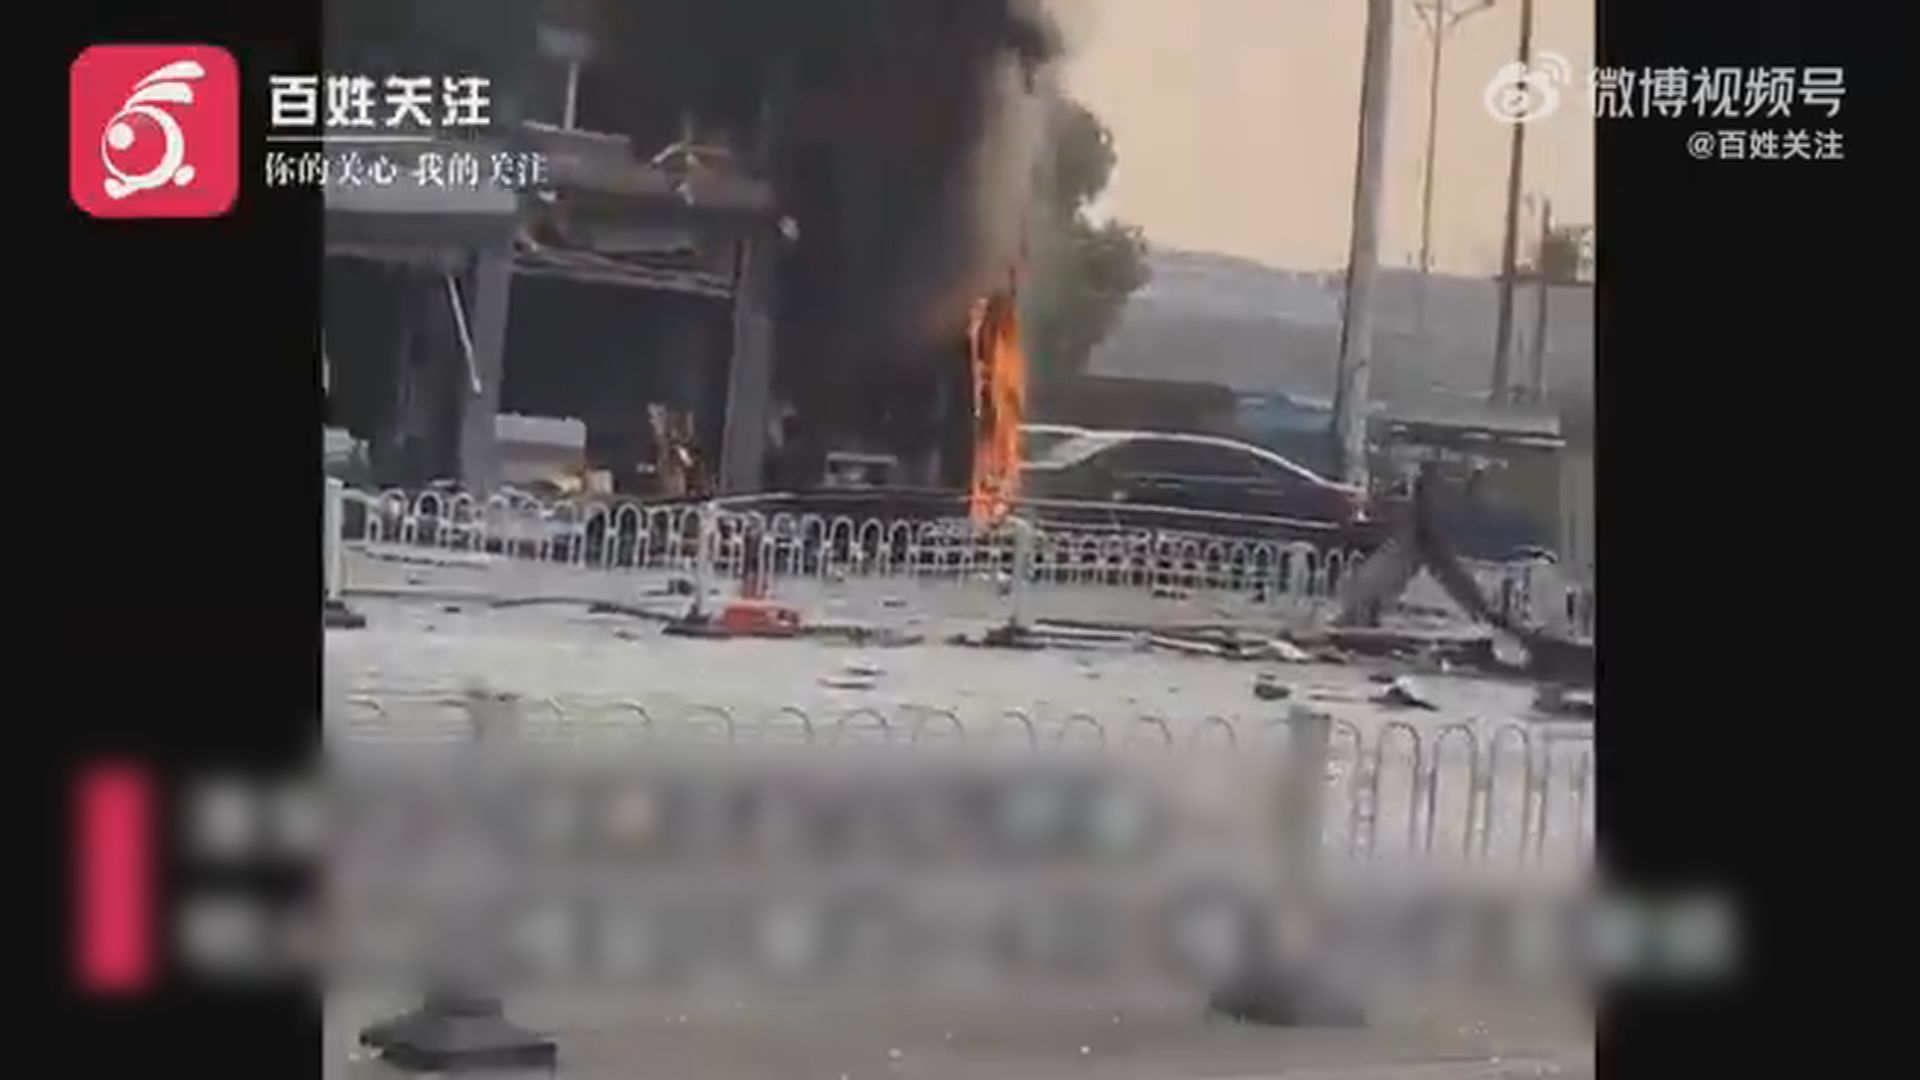 江蘇淮安一家燒烤店爆炸 兩人受傷送院